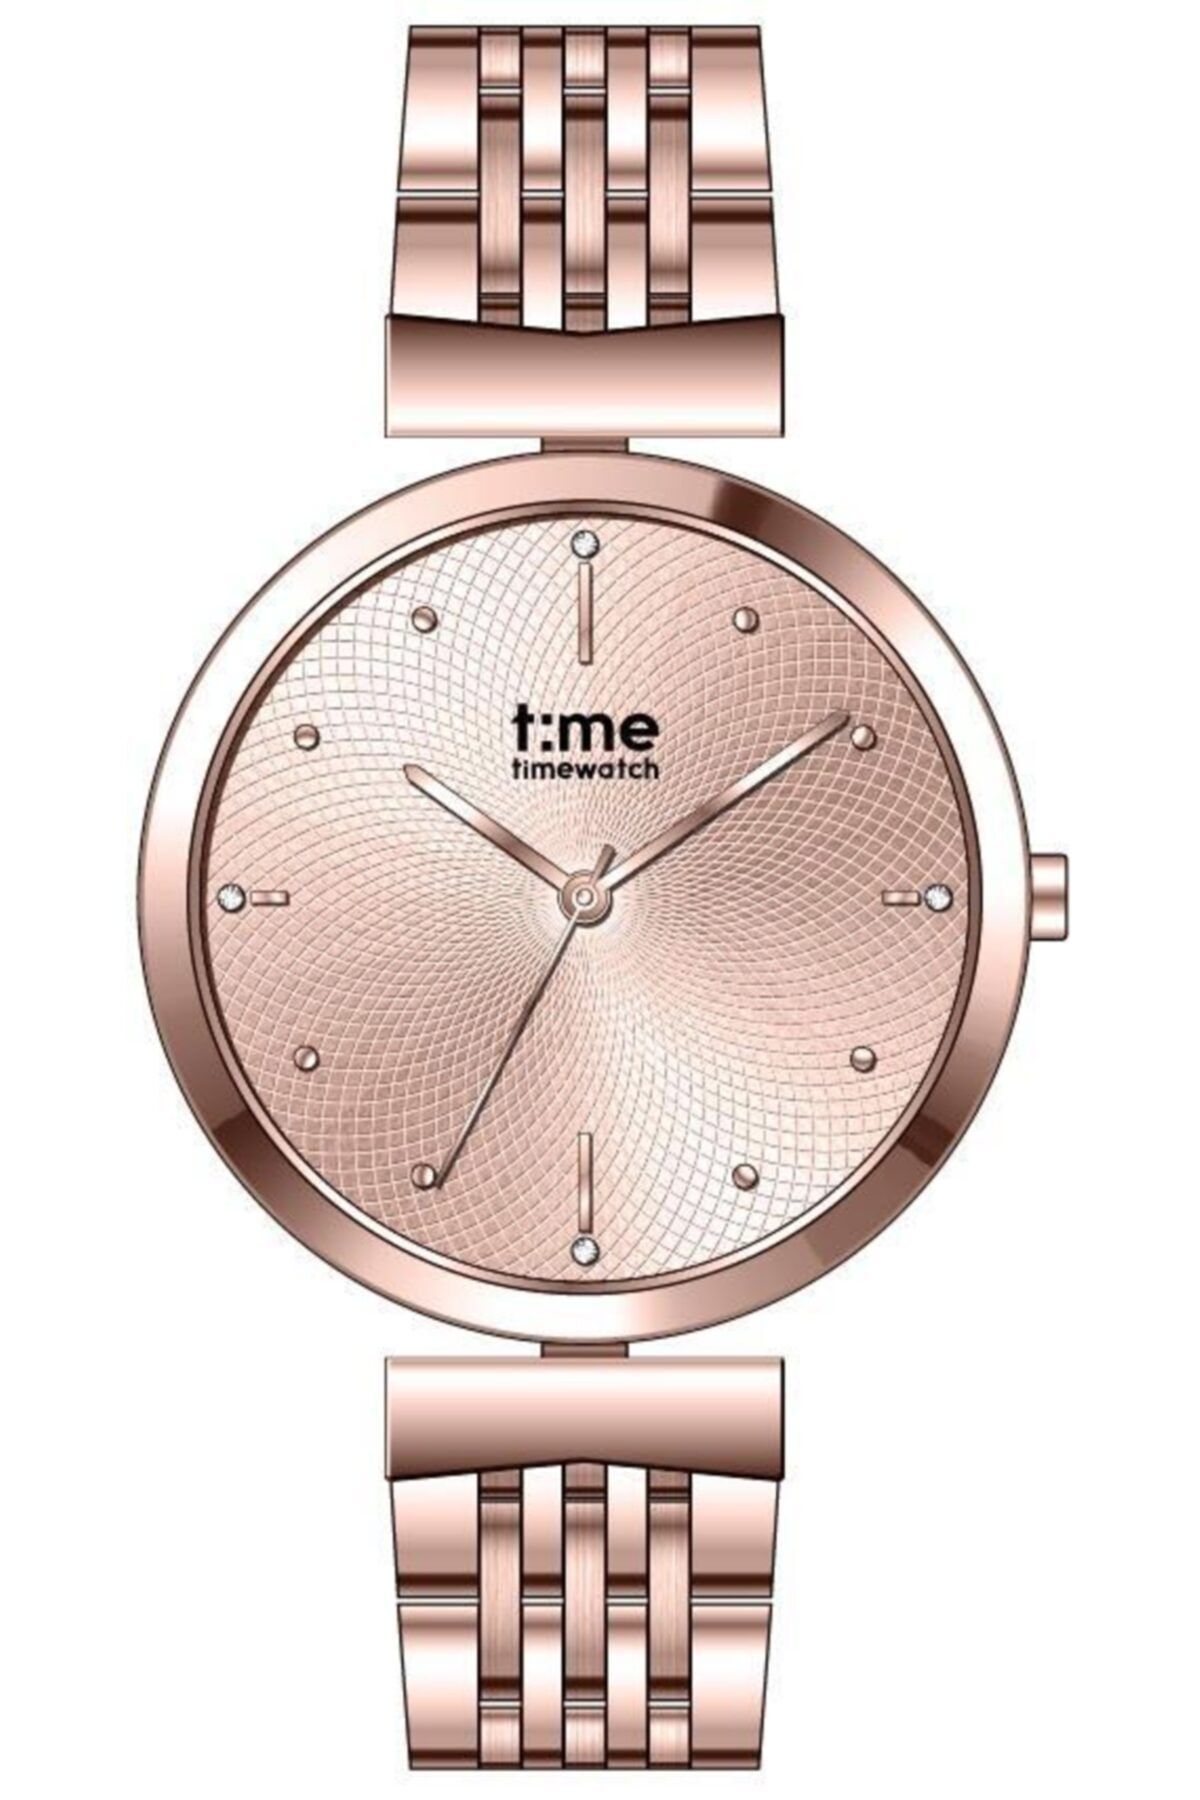 Timewatch Tw.195.4rrr Time Watch Kadın Kol Saati